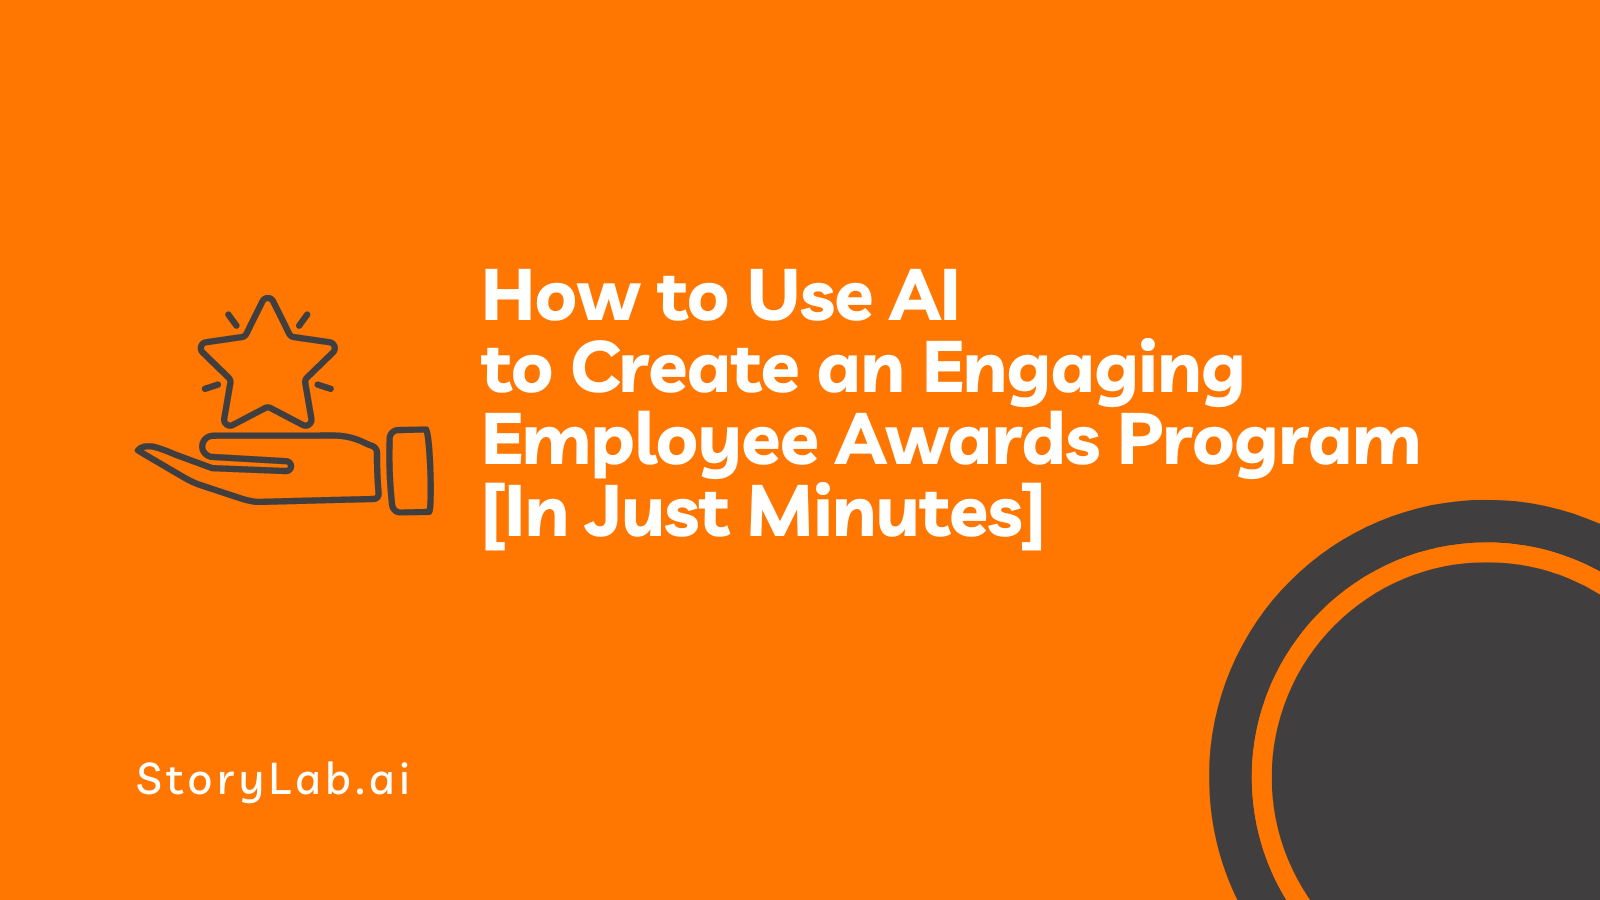 Comment utiliser l'IA pour créer un programme de récompenses pour les employés engageant [en quelques minutes]